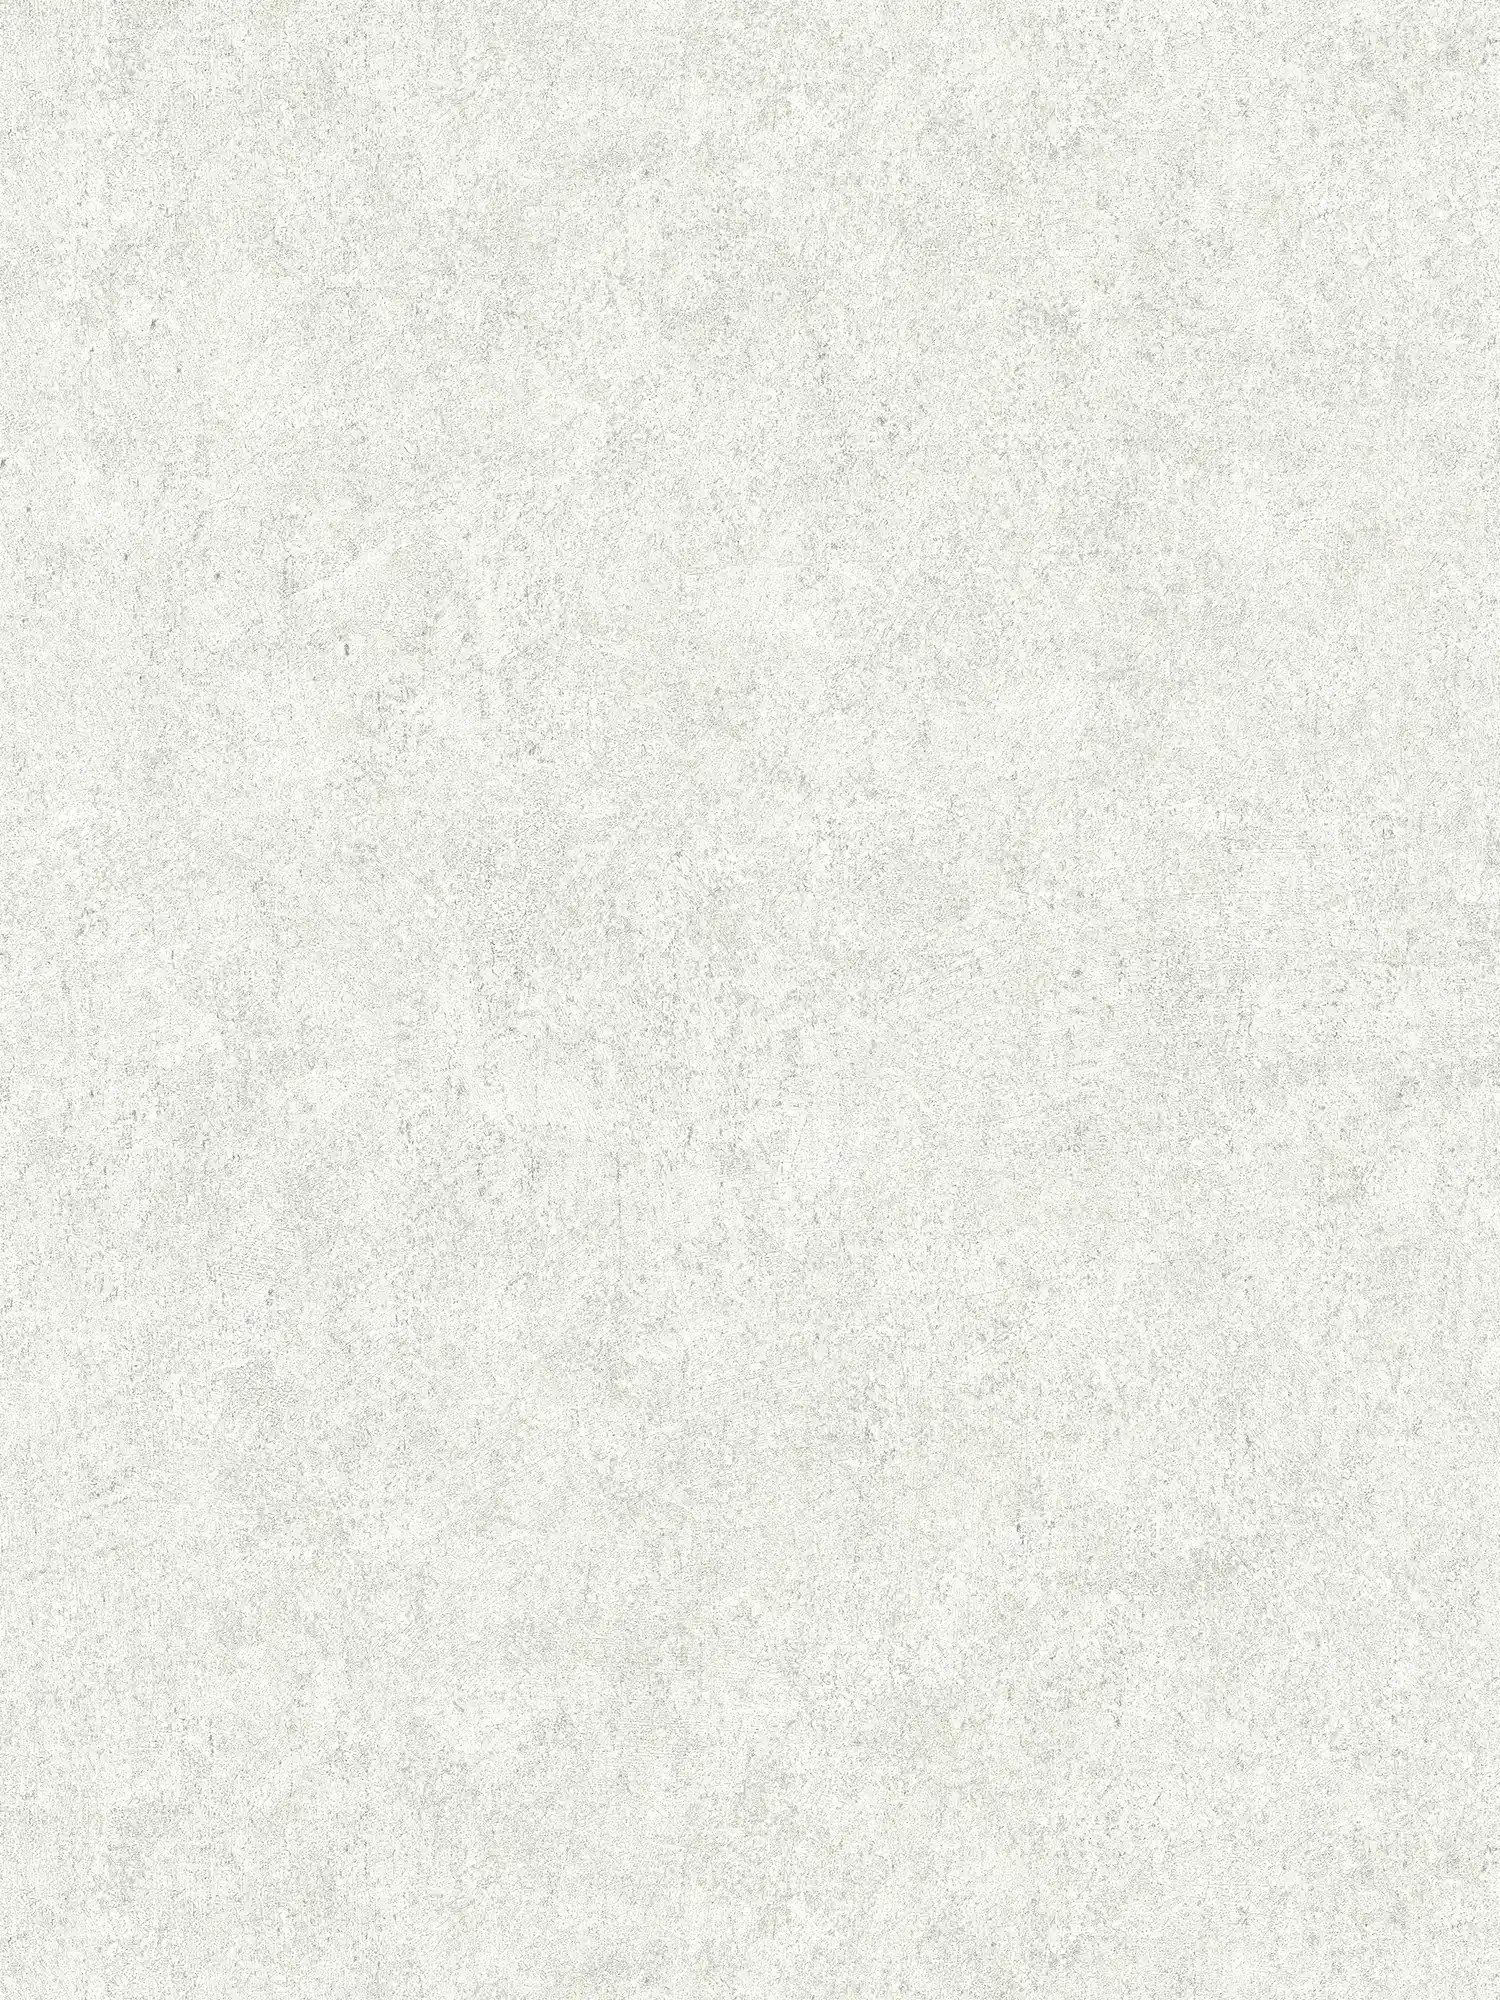 Carta da parati in gesso ottico beige grigio screziato con struttura in rilievo
